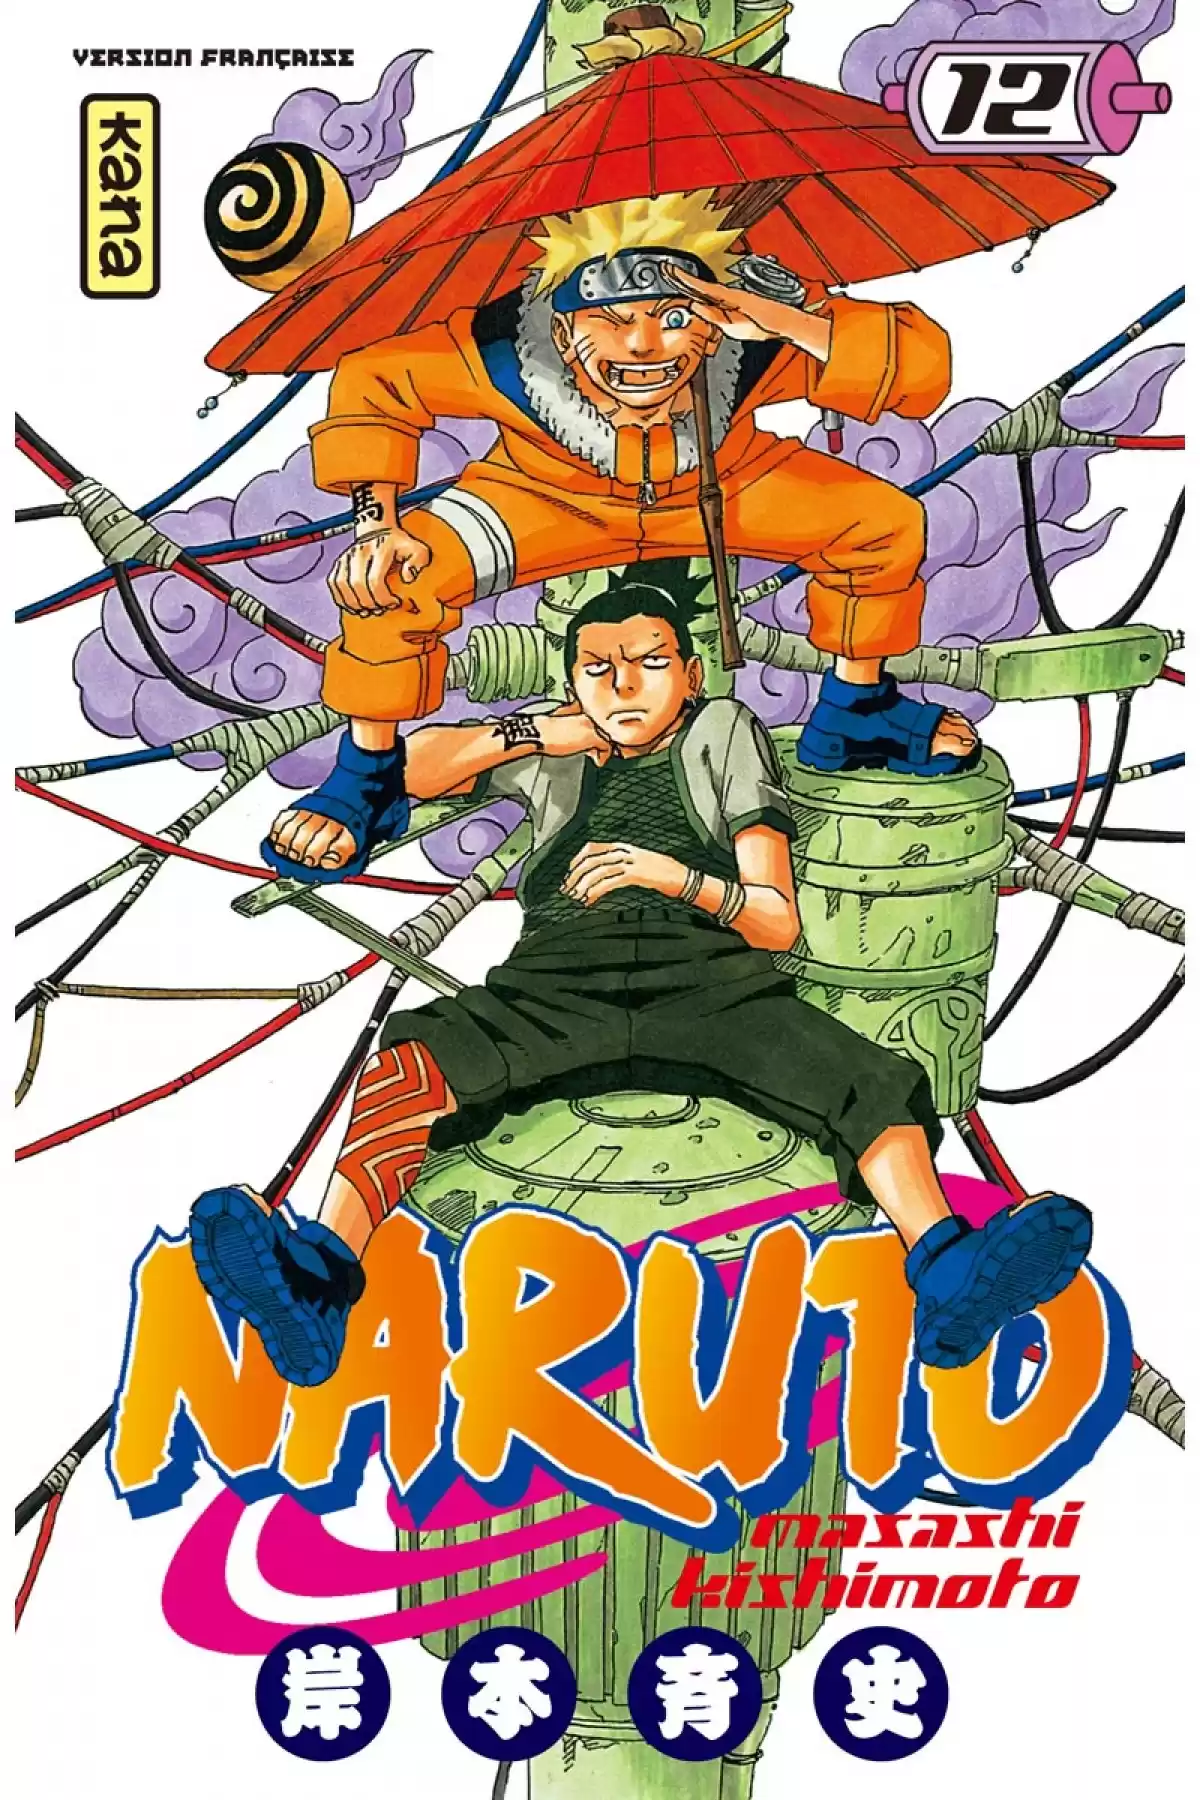 Naruto Volume 12 page 1